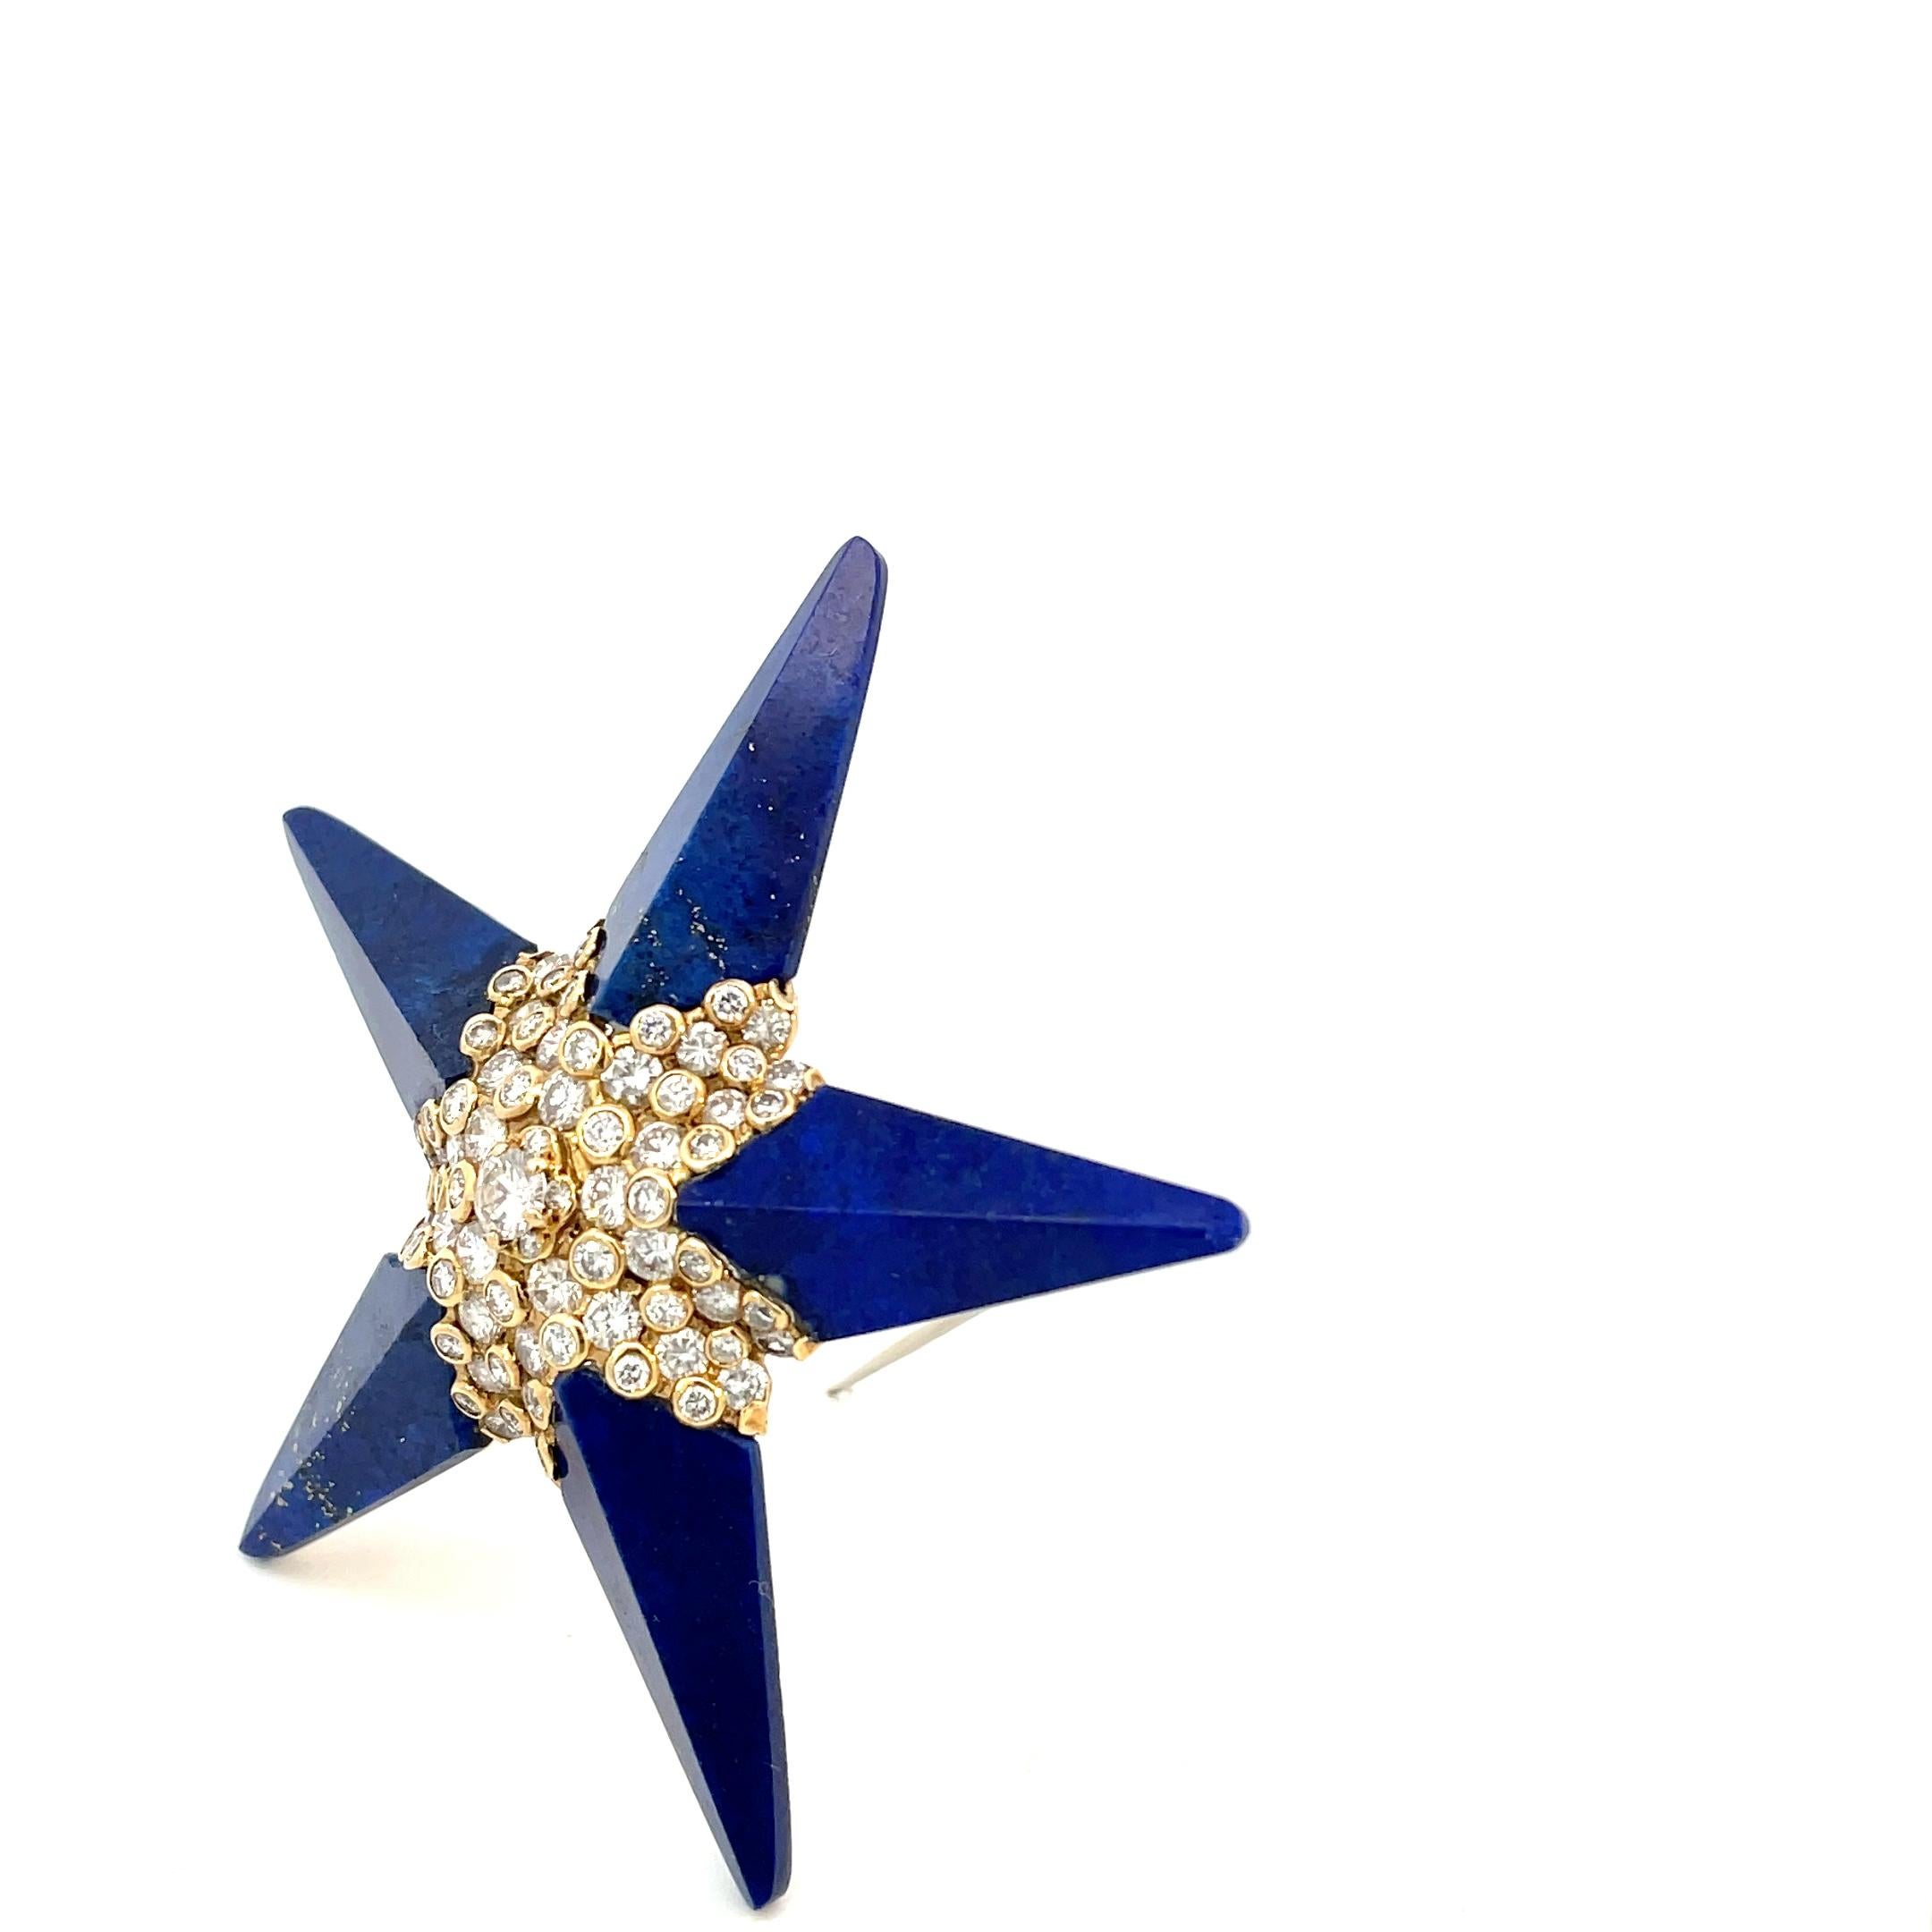 Broche à pendentif étoile de Cartier, unique en son genre, datant des années 1970.
Conçue comme une étoile, sertie de lapis sculpté, rehaussée de diamants ronds.
Cette superbe broche peut être portée comme un pendentif ou comme une broche.

Diamètre